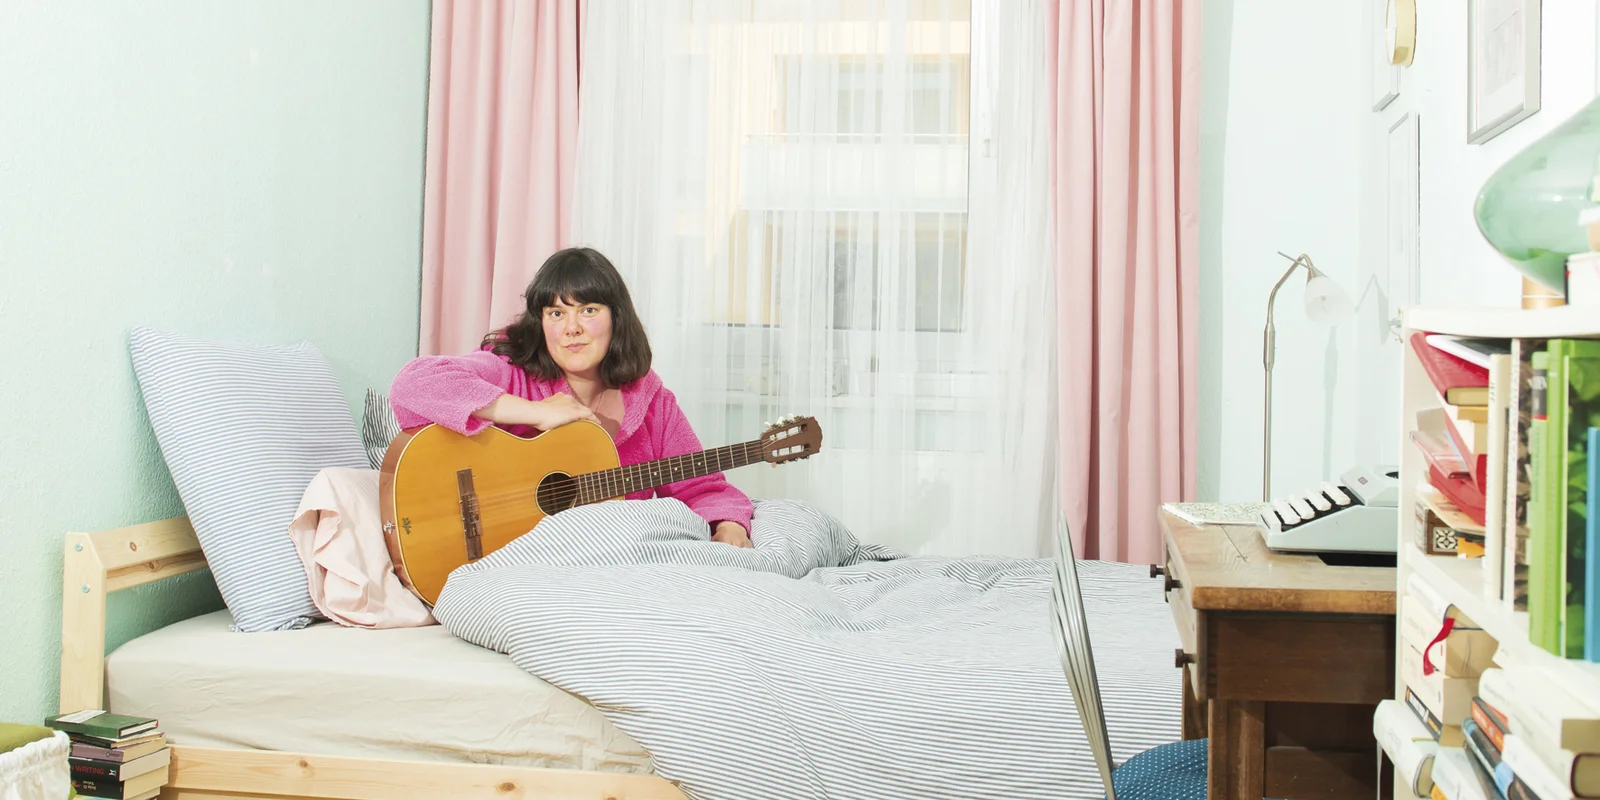 Frau Pauli sitzt im rosa Bademantel auf einem Bett, eine Gitarre vor sich, auf die sie ihren rechten Arm abgelegt hat.